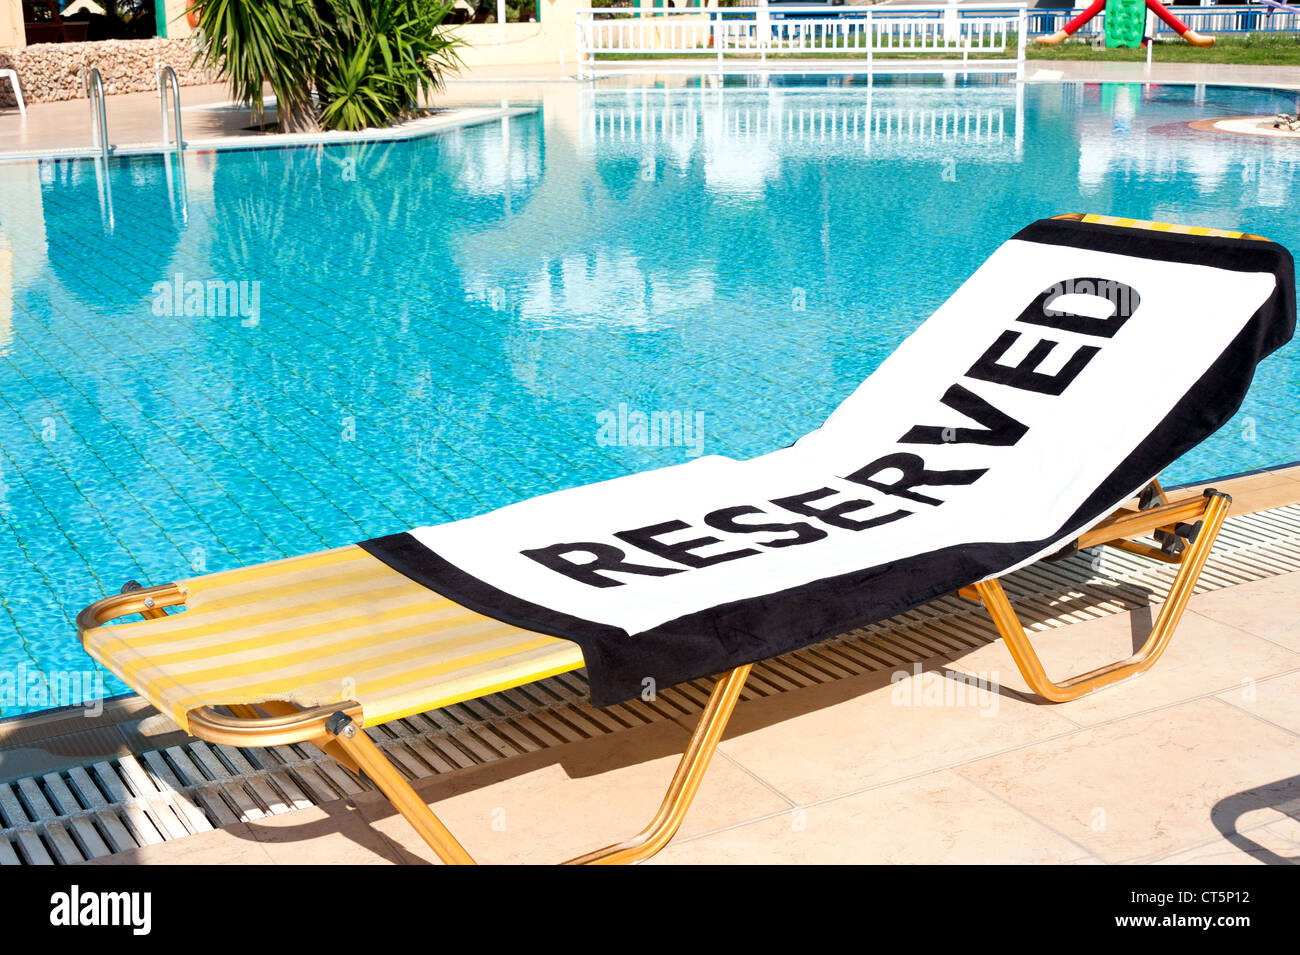 Ein Strandtuch mit dem Wort "Reserviert" zu verbreiten, auf einem Liegestuhl neben einem Schwimmbad Stockfoto